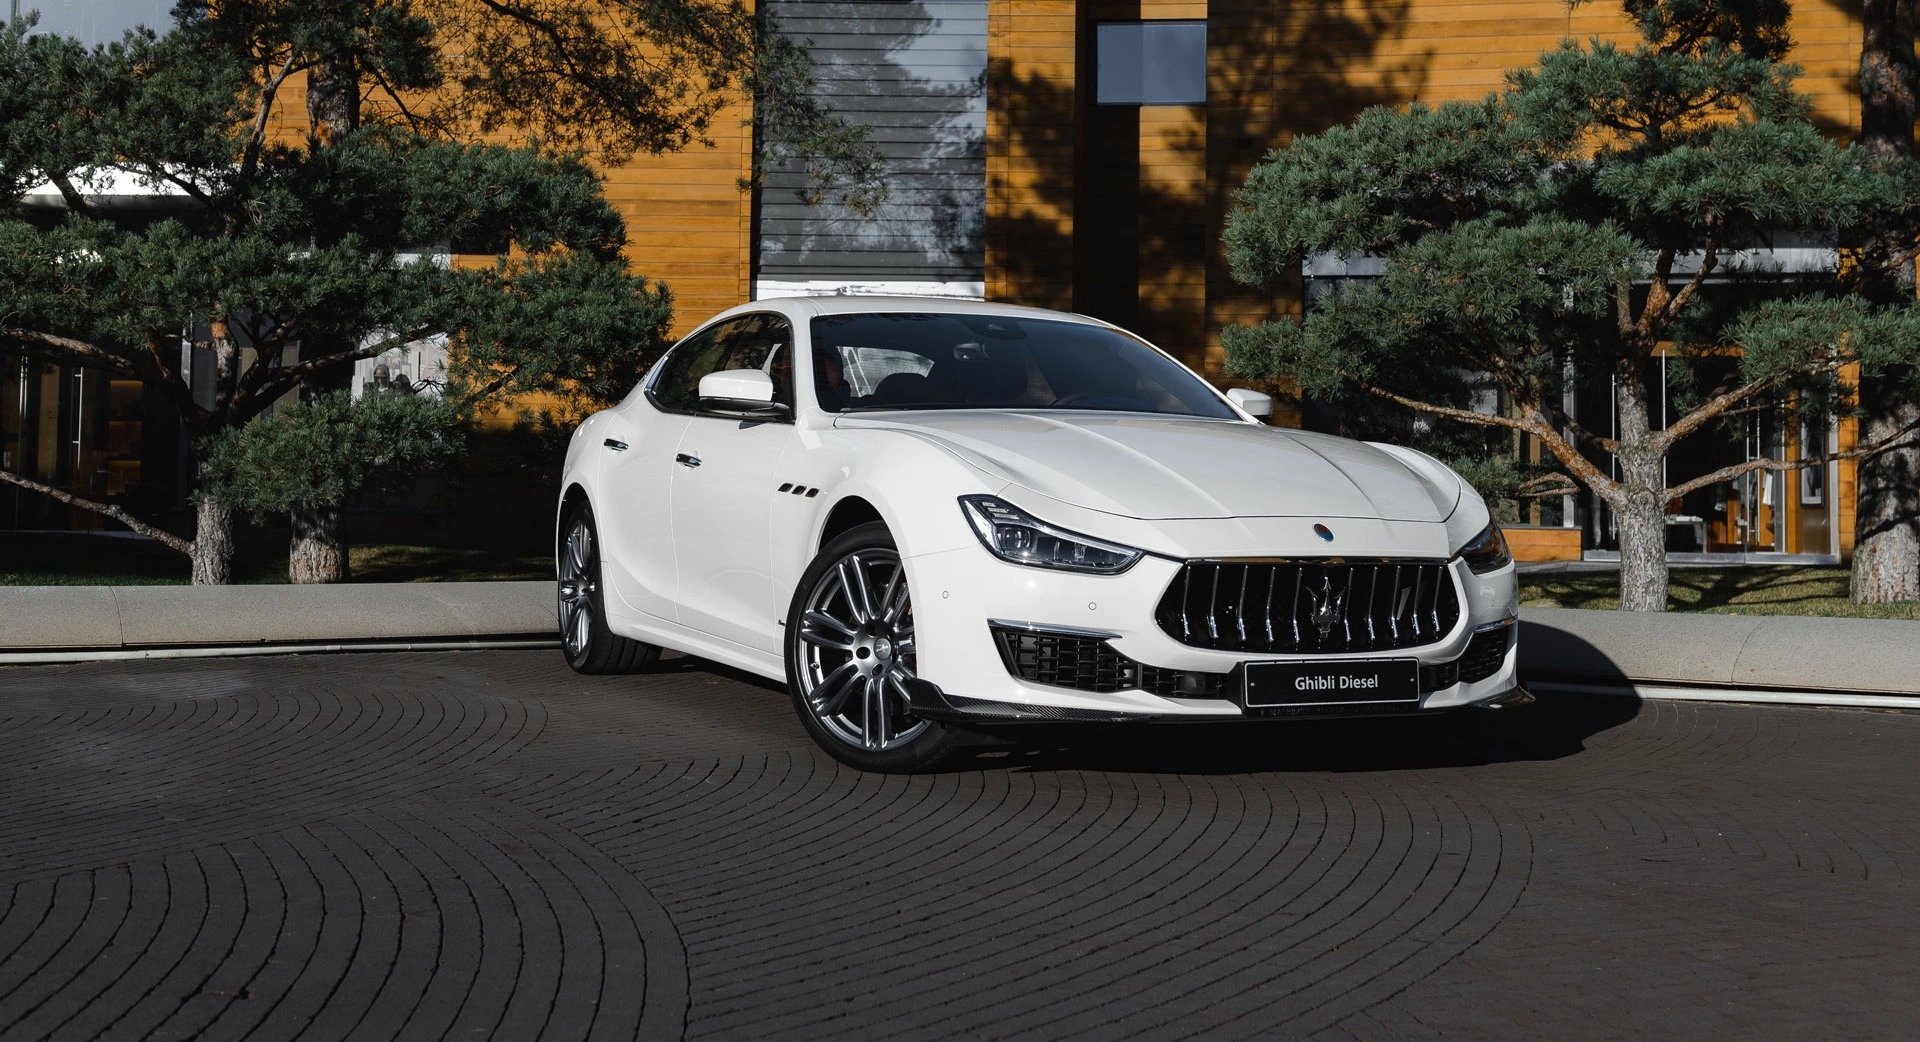 Kaufen Sie ein Karosserie-Kit 2024 für den Maserati Ghibli Modena 4dr in weißer Außenfarbe